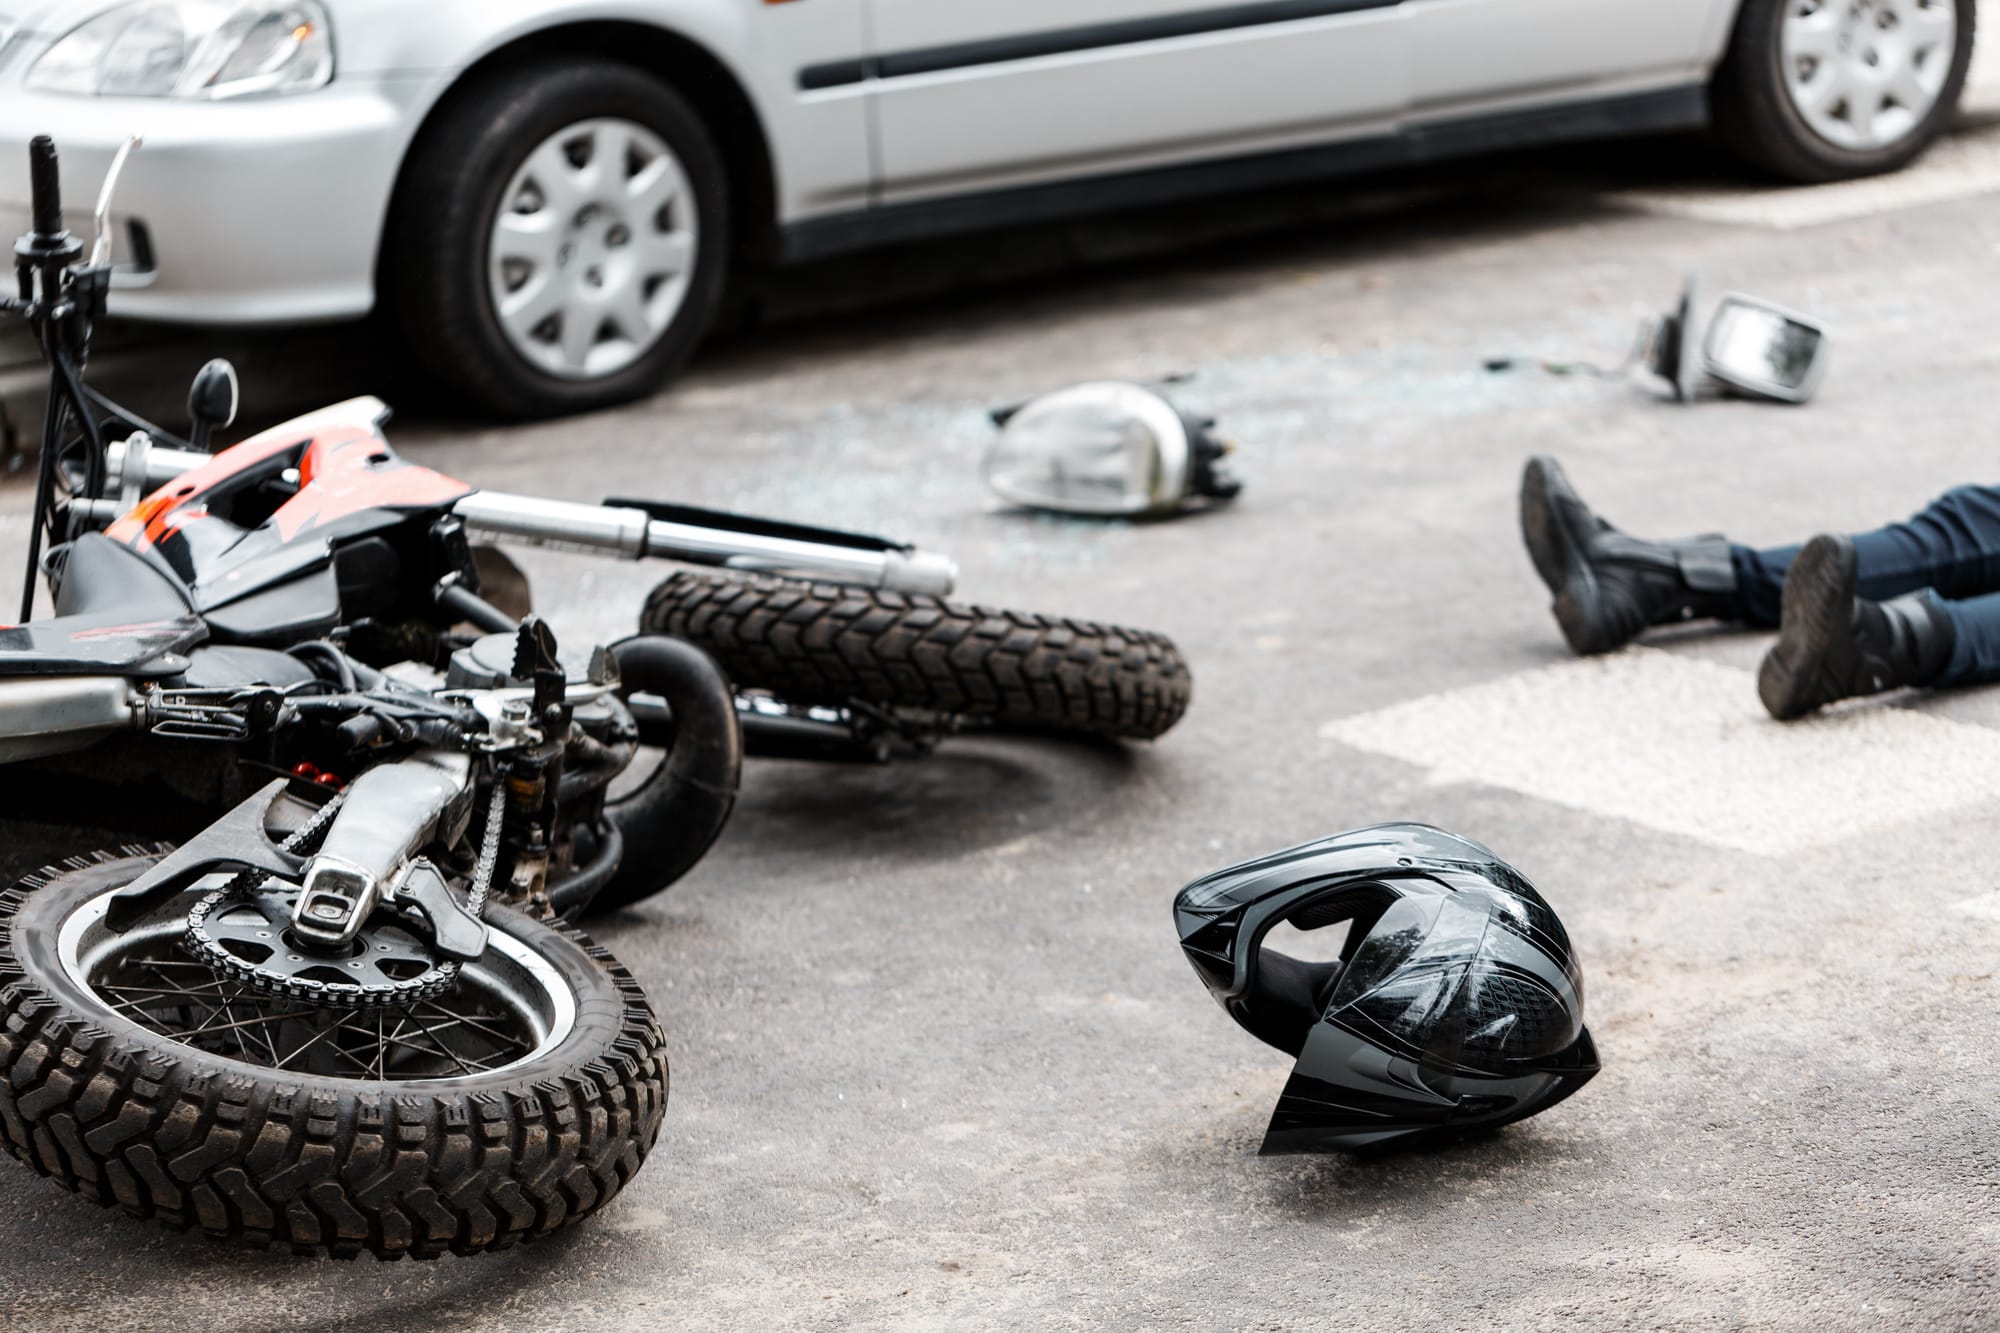 Piernas de persona tendida en la carretera en la foto de accidente de moto y coche